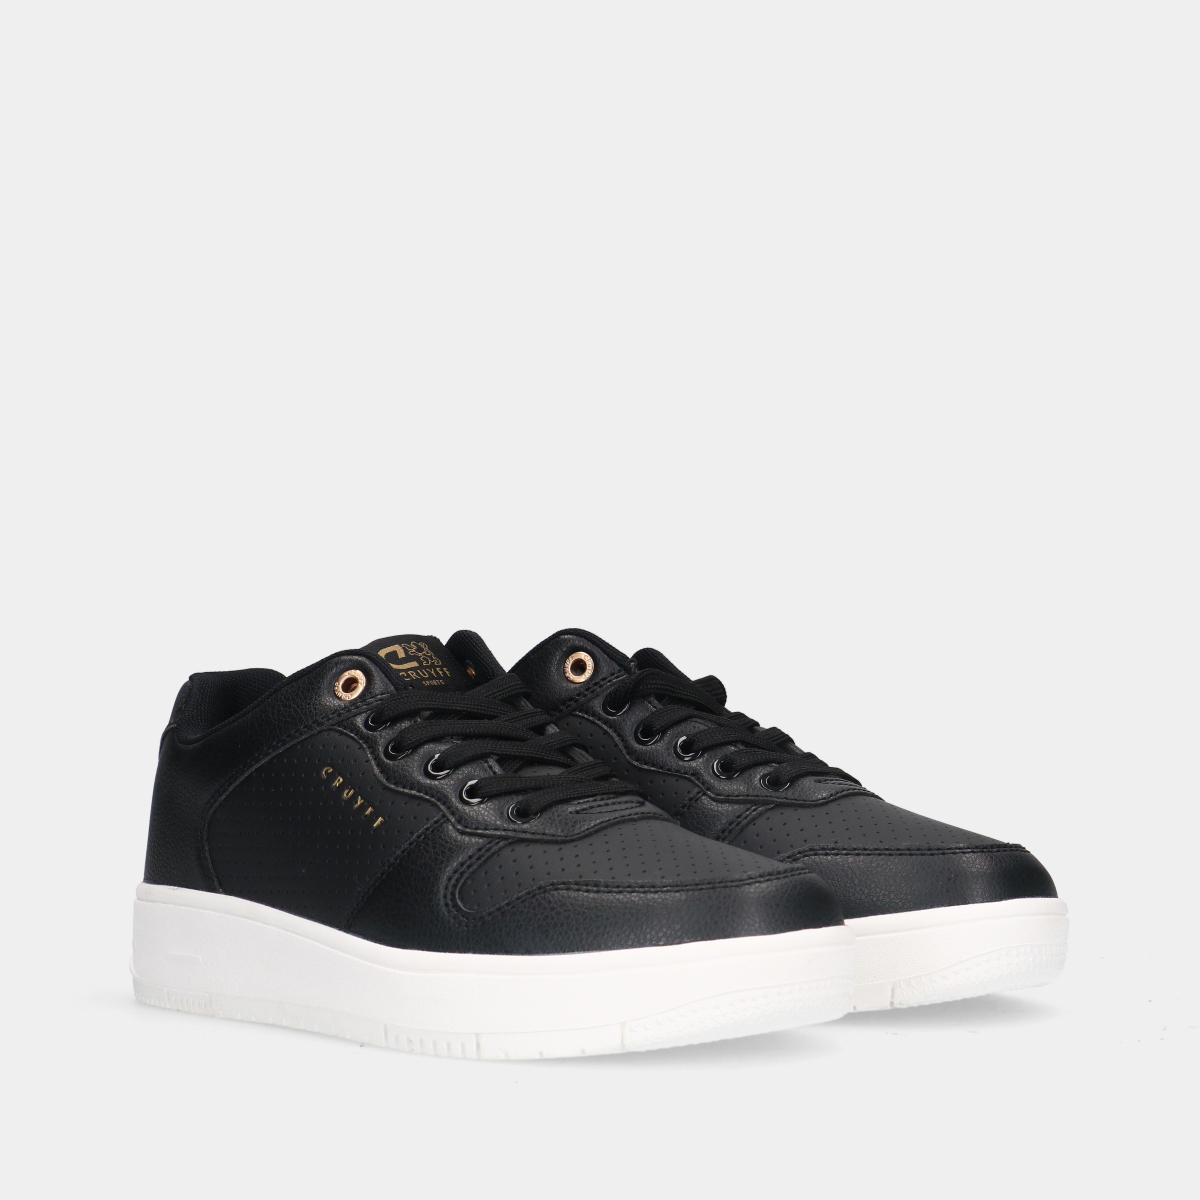 Cruyff Indoor Royal 998 Black dames sneakers